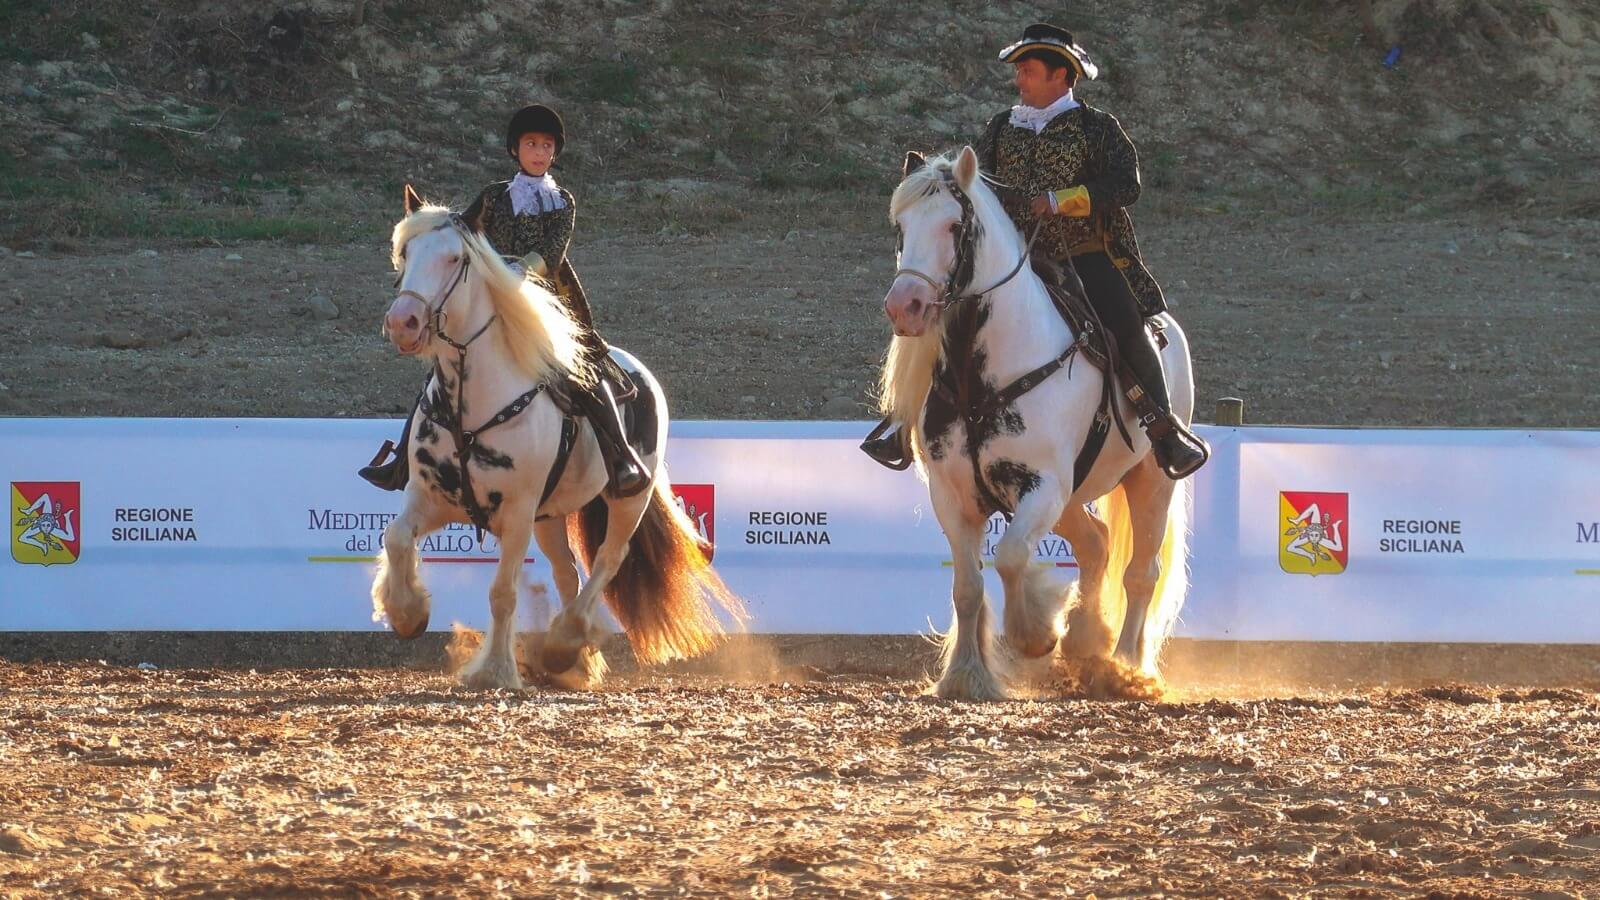 Doppio weekend alla riscoperta della tradizione siciliana attraverso la cultura equestre alla 4a Fiera Mediterranea del Cavallo